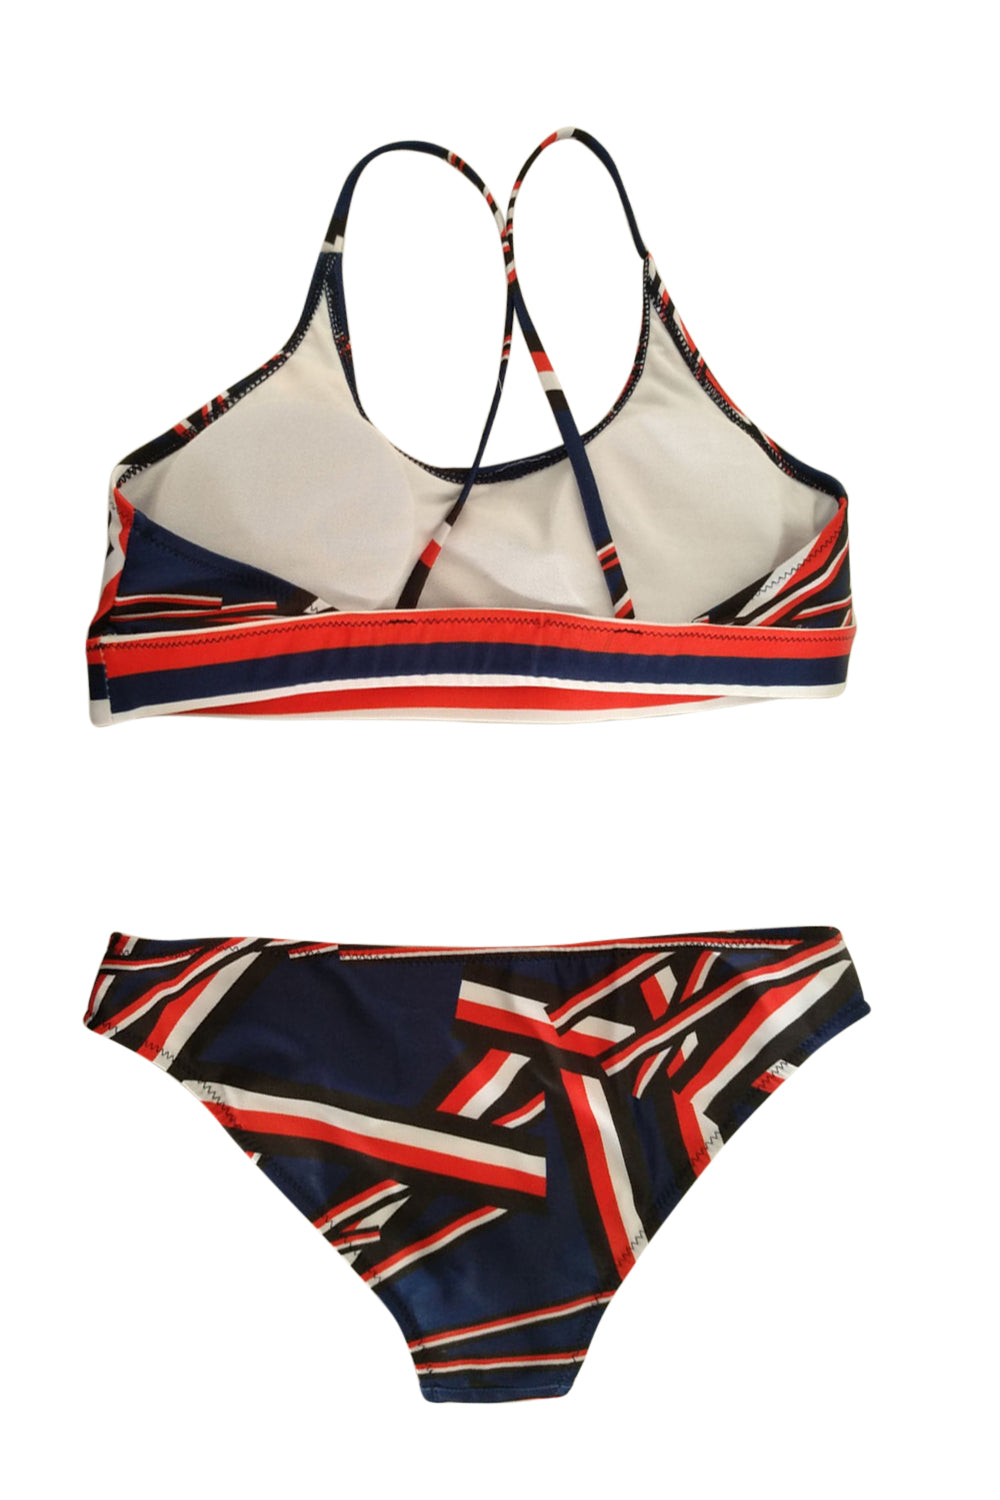 Iyasson Trandy Sport Style Geometric Pattern Bikini Sets